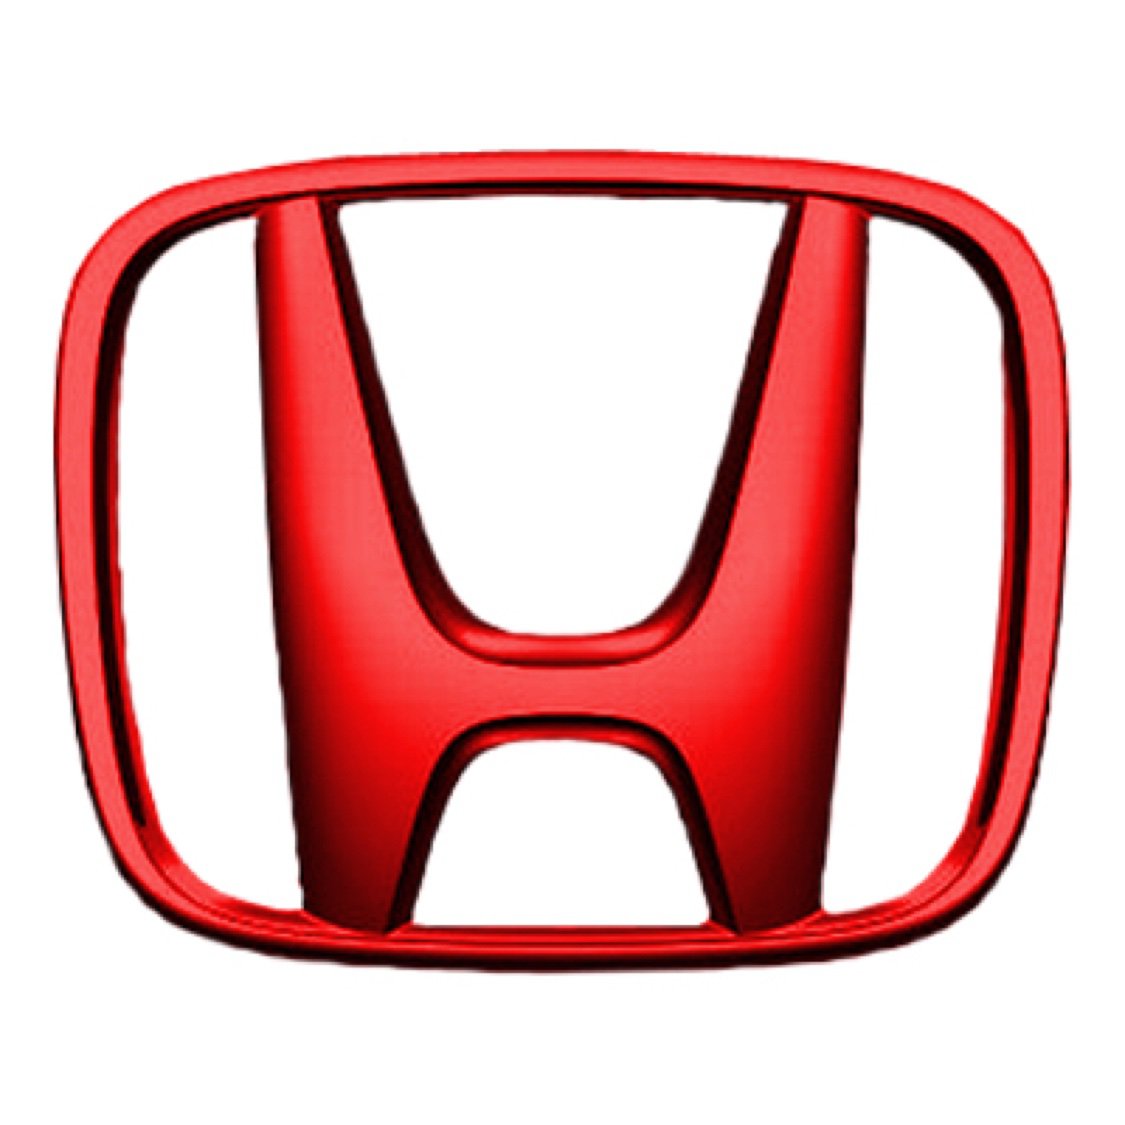 Honda Новосибирск